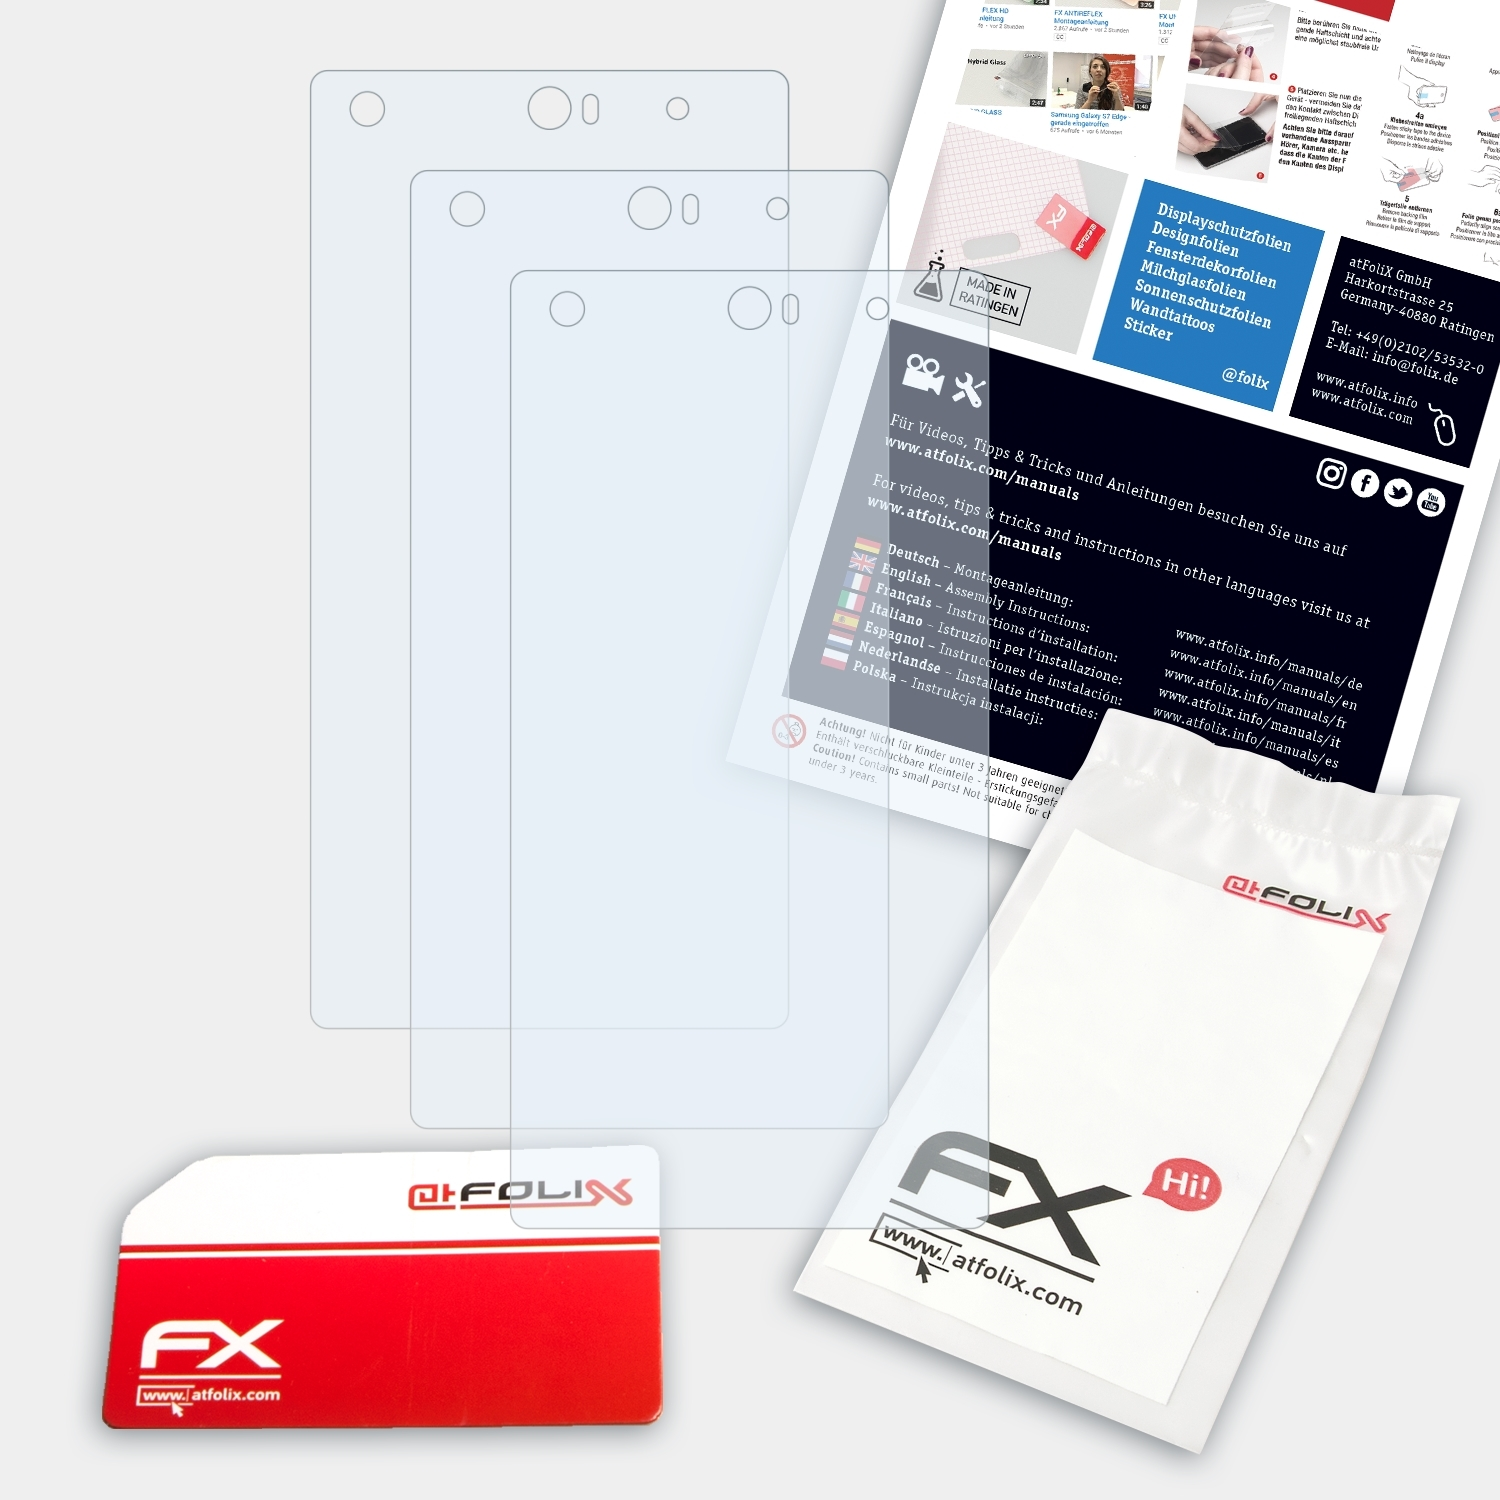 Displayschutz(für Liquid 3x Acer FX-Clear X2) ATFOLIX